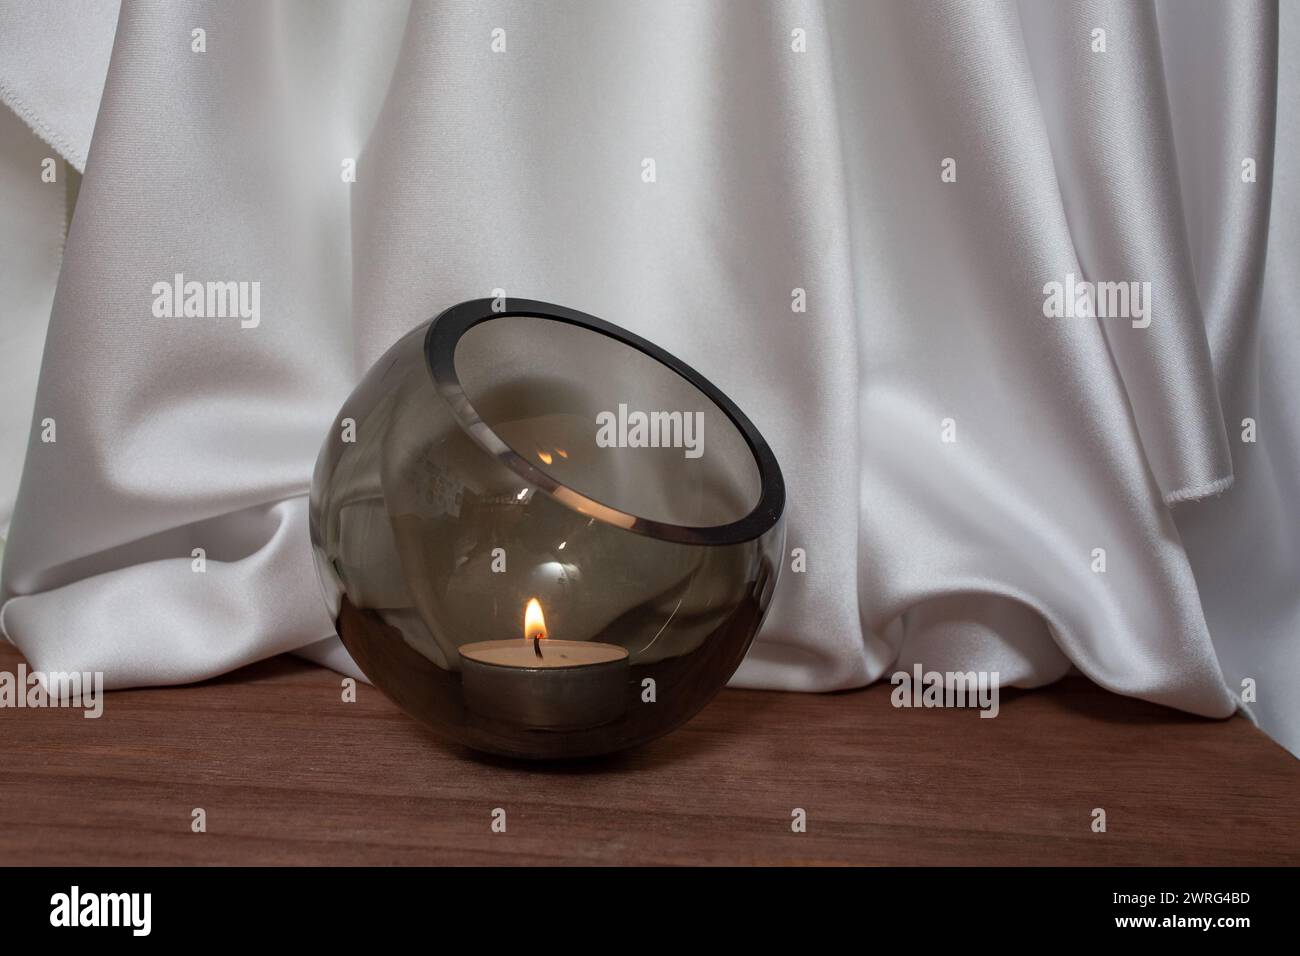 Ciotola di vetro con candela accesa su pavimento in legno con eleganti tende in tessuto satinato bianco ondulato, sfocata sullo sfondo, sfondo per il posizionamento dei prodotti Foto Stock